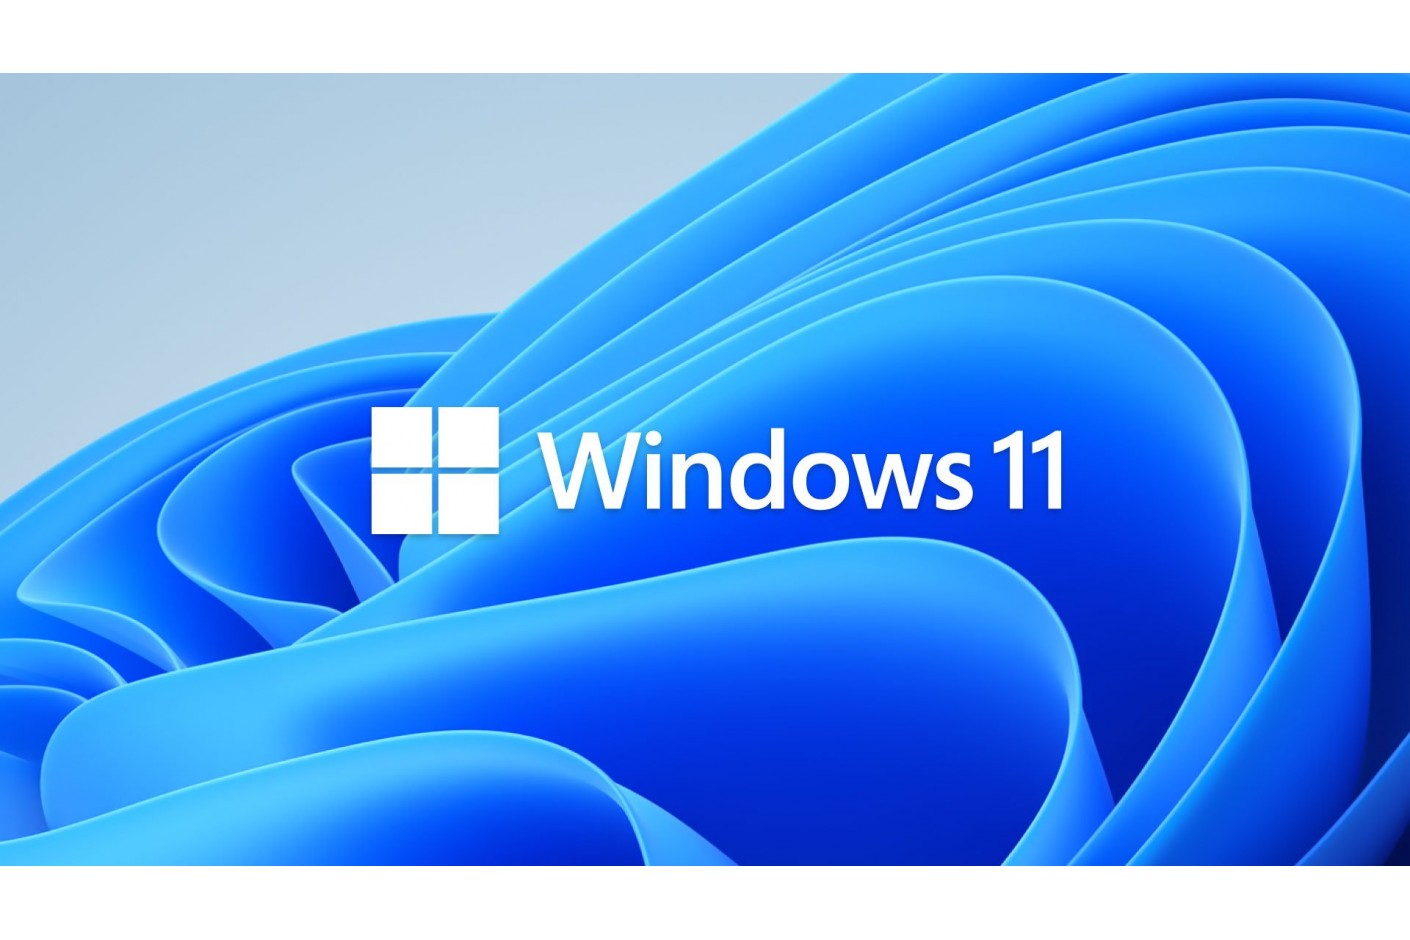 Installer Windows 11 sur un PC incompatible est une très mauvaise idée